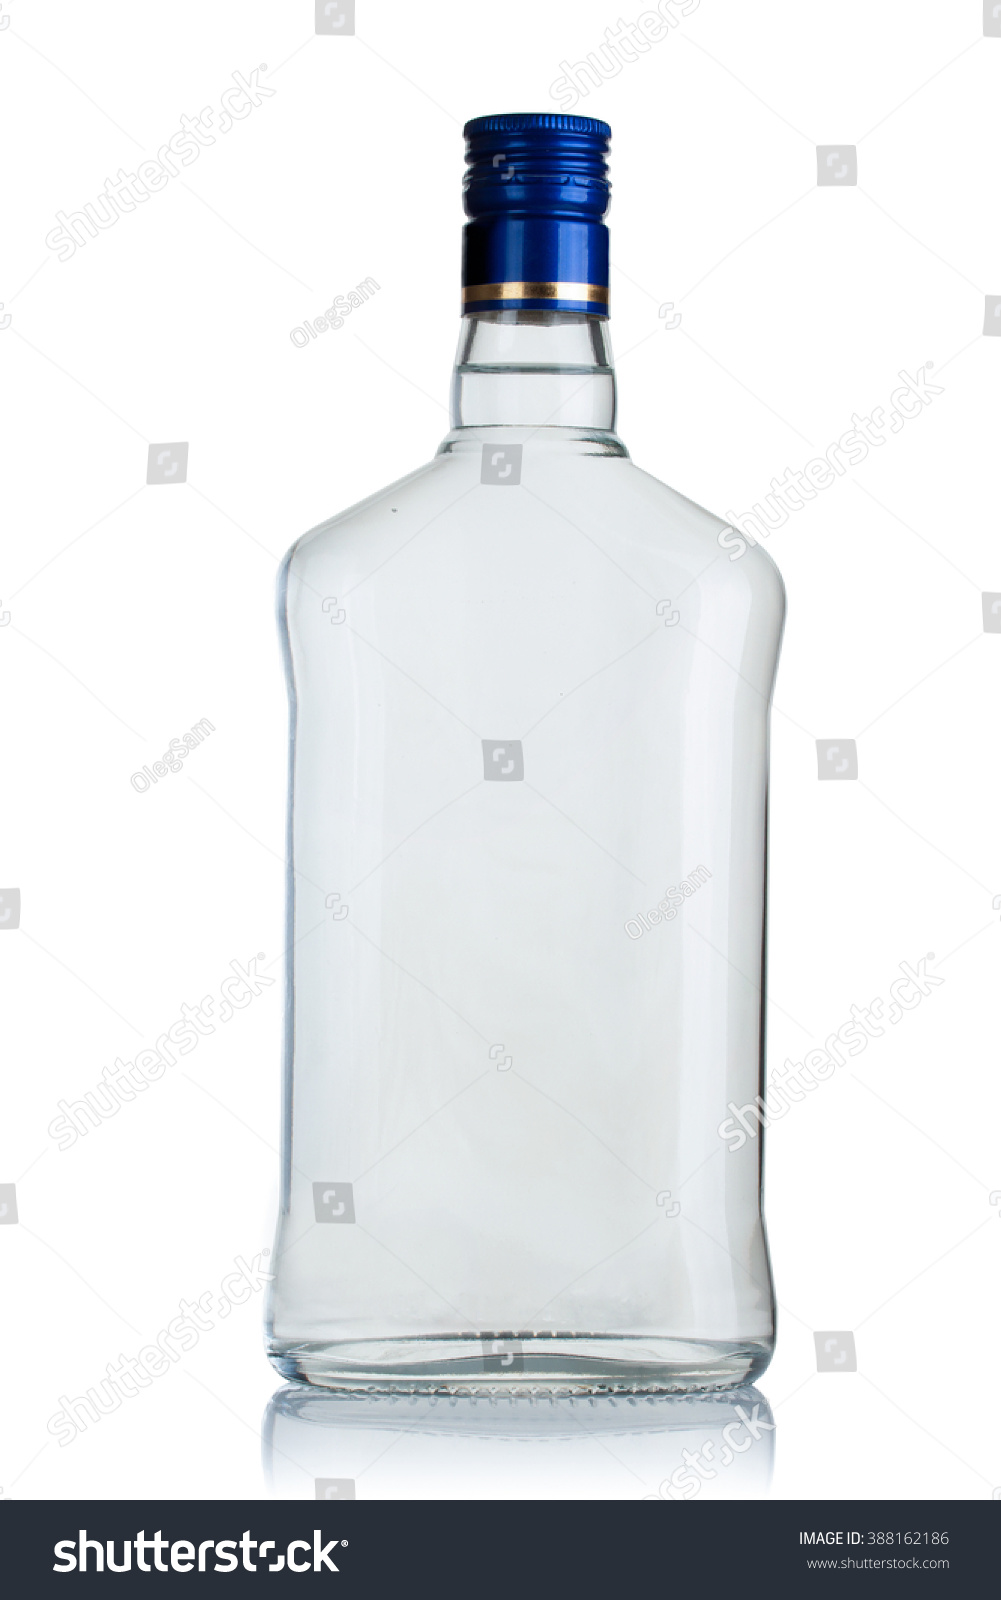 full bottle of vodka on a white background #388162186